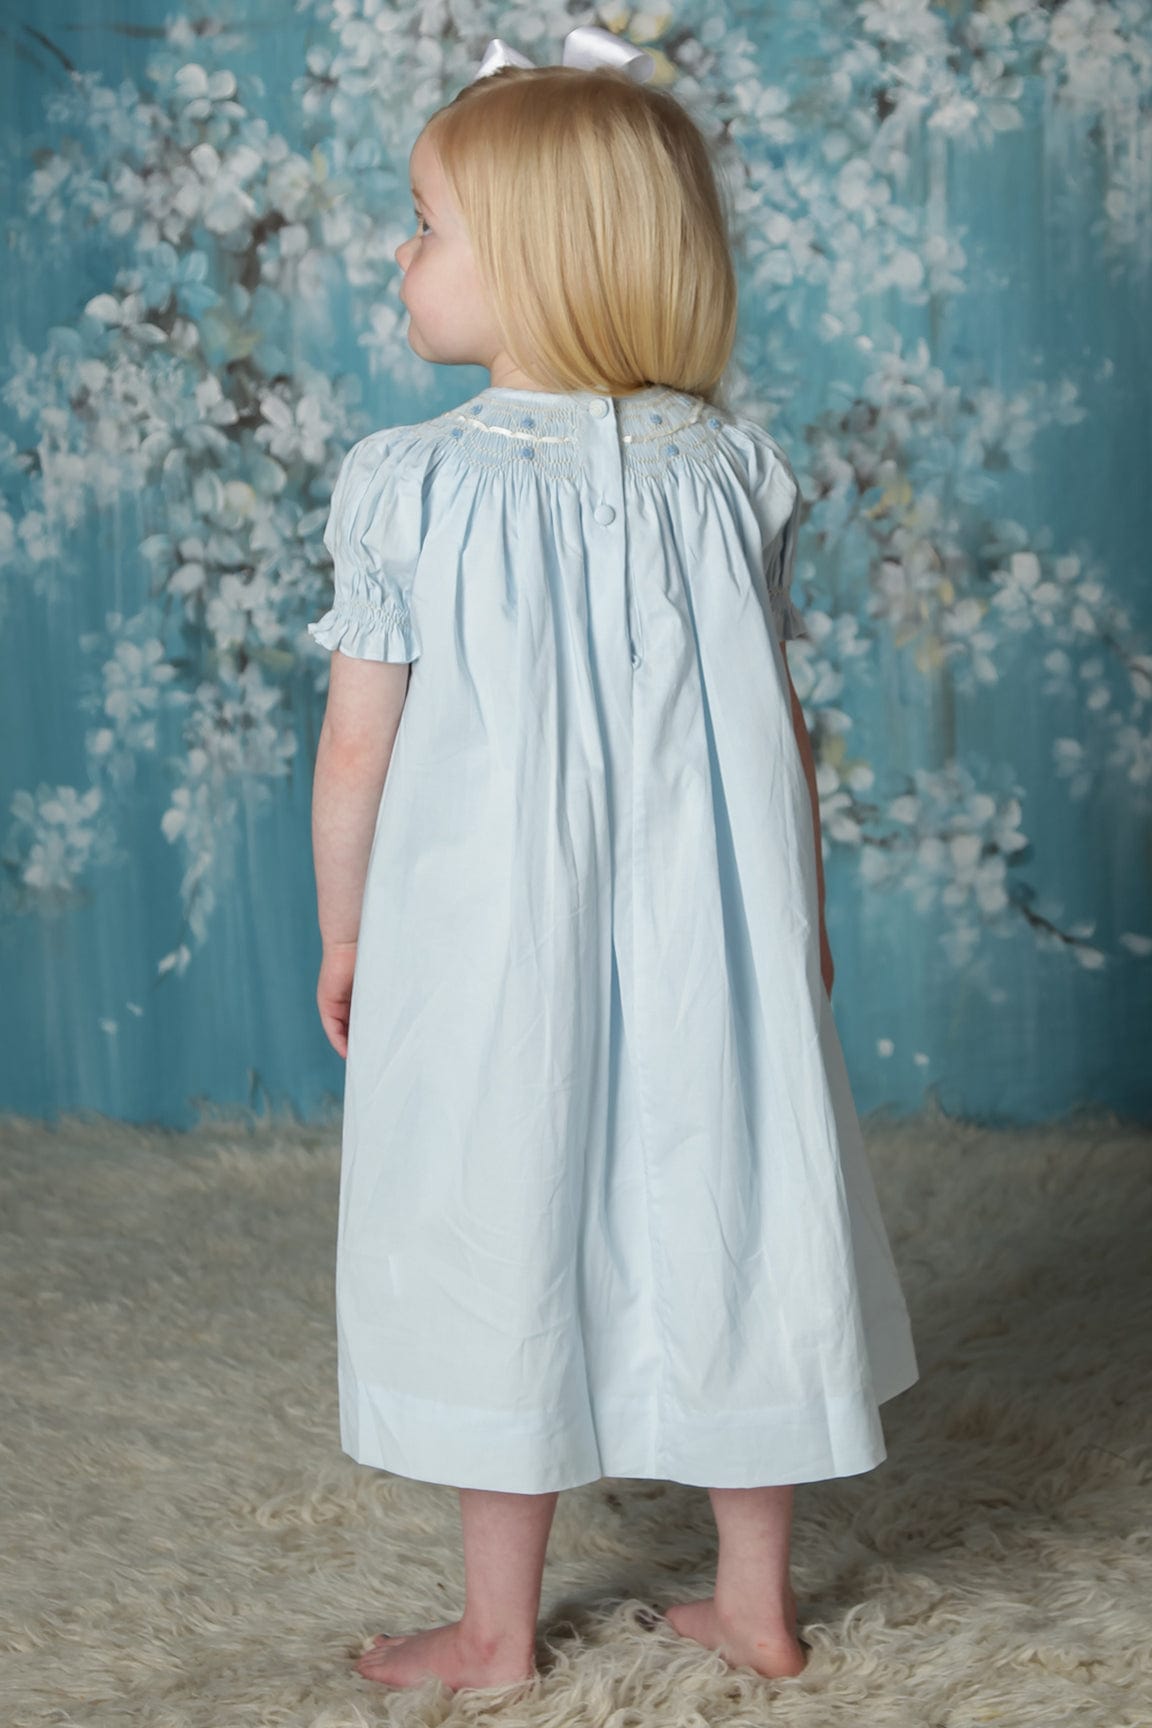 Smocked Bishop Dress Toddler to baby Dresses Blue Heirloom Pink ecru –  Strasburg Children